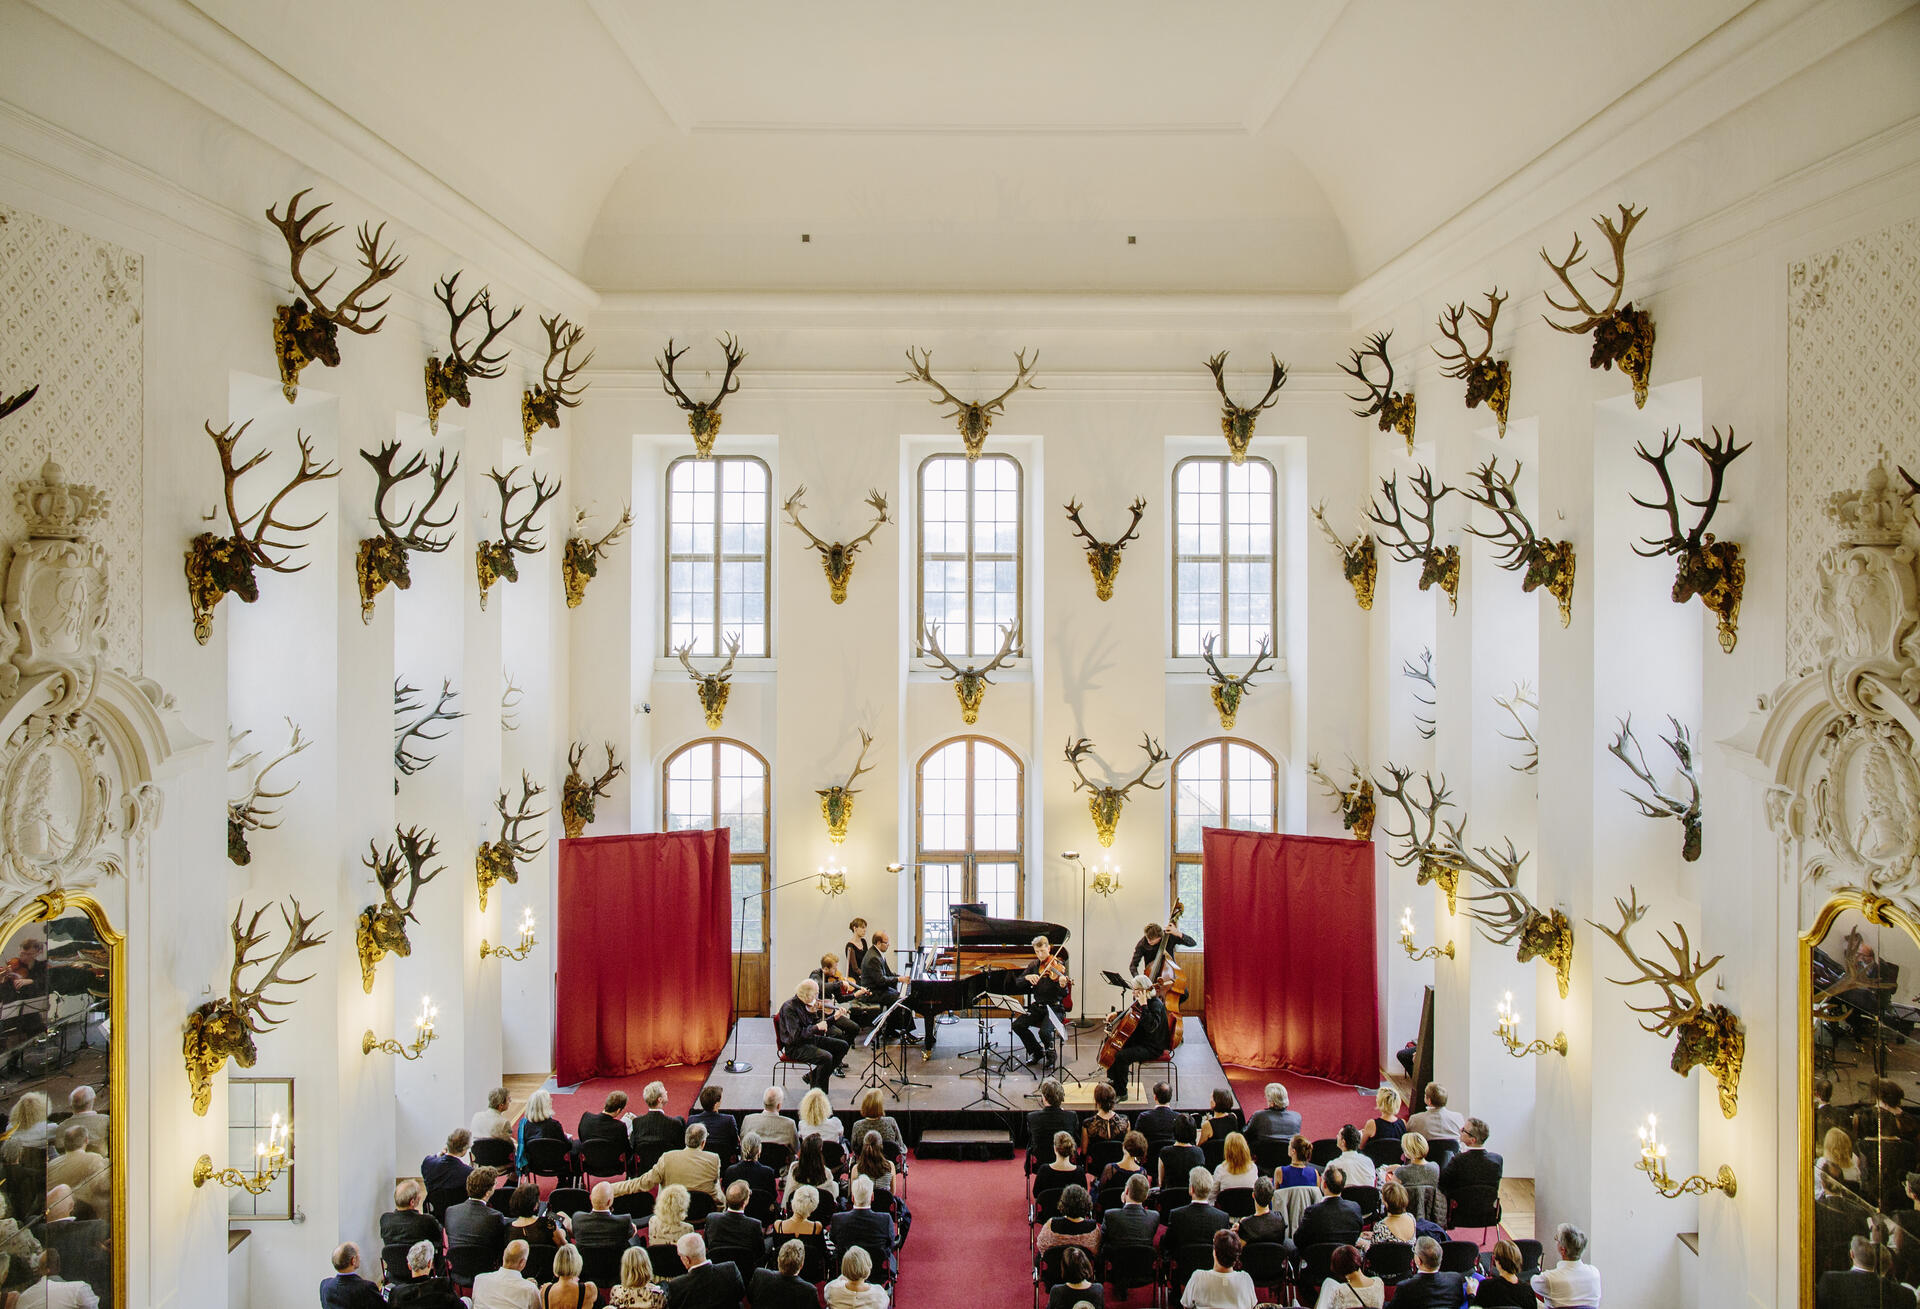 Bild vergrößern: Ein Ensemble in einem großen Raum des Schlosses Moritzburg mit Zuhörern.